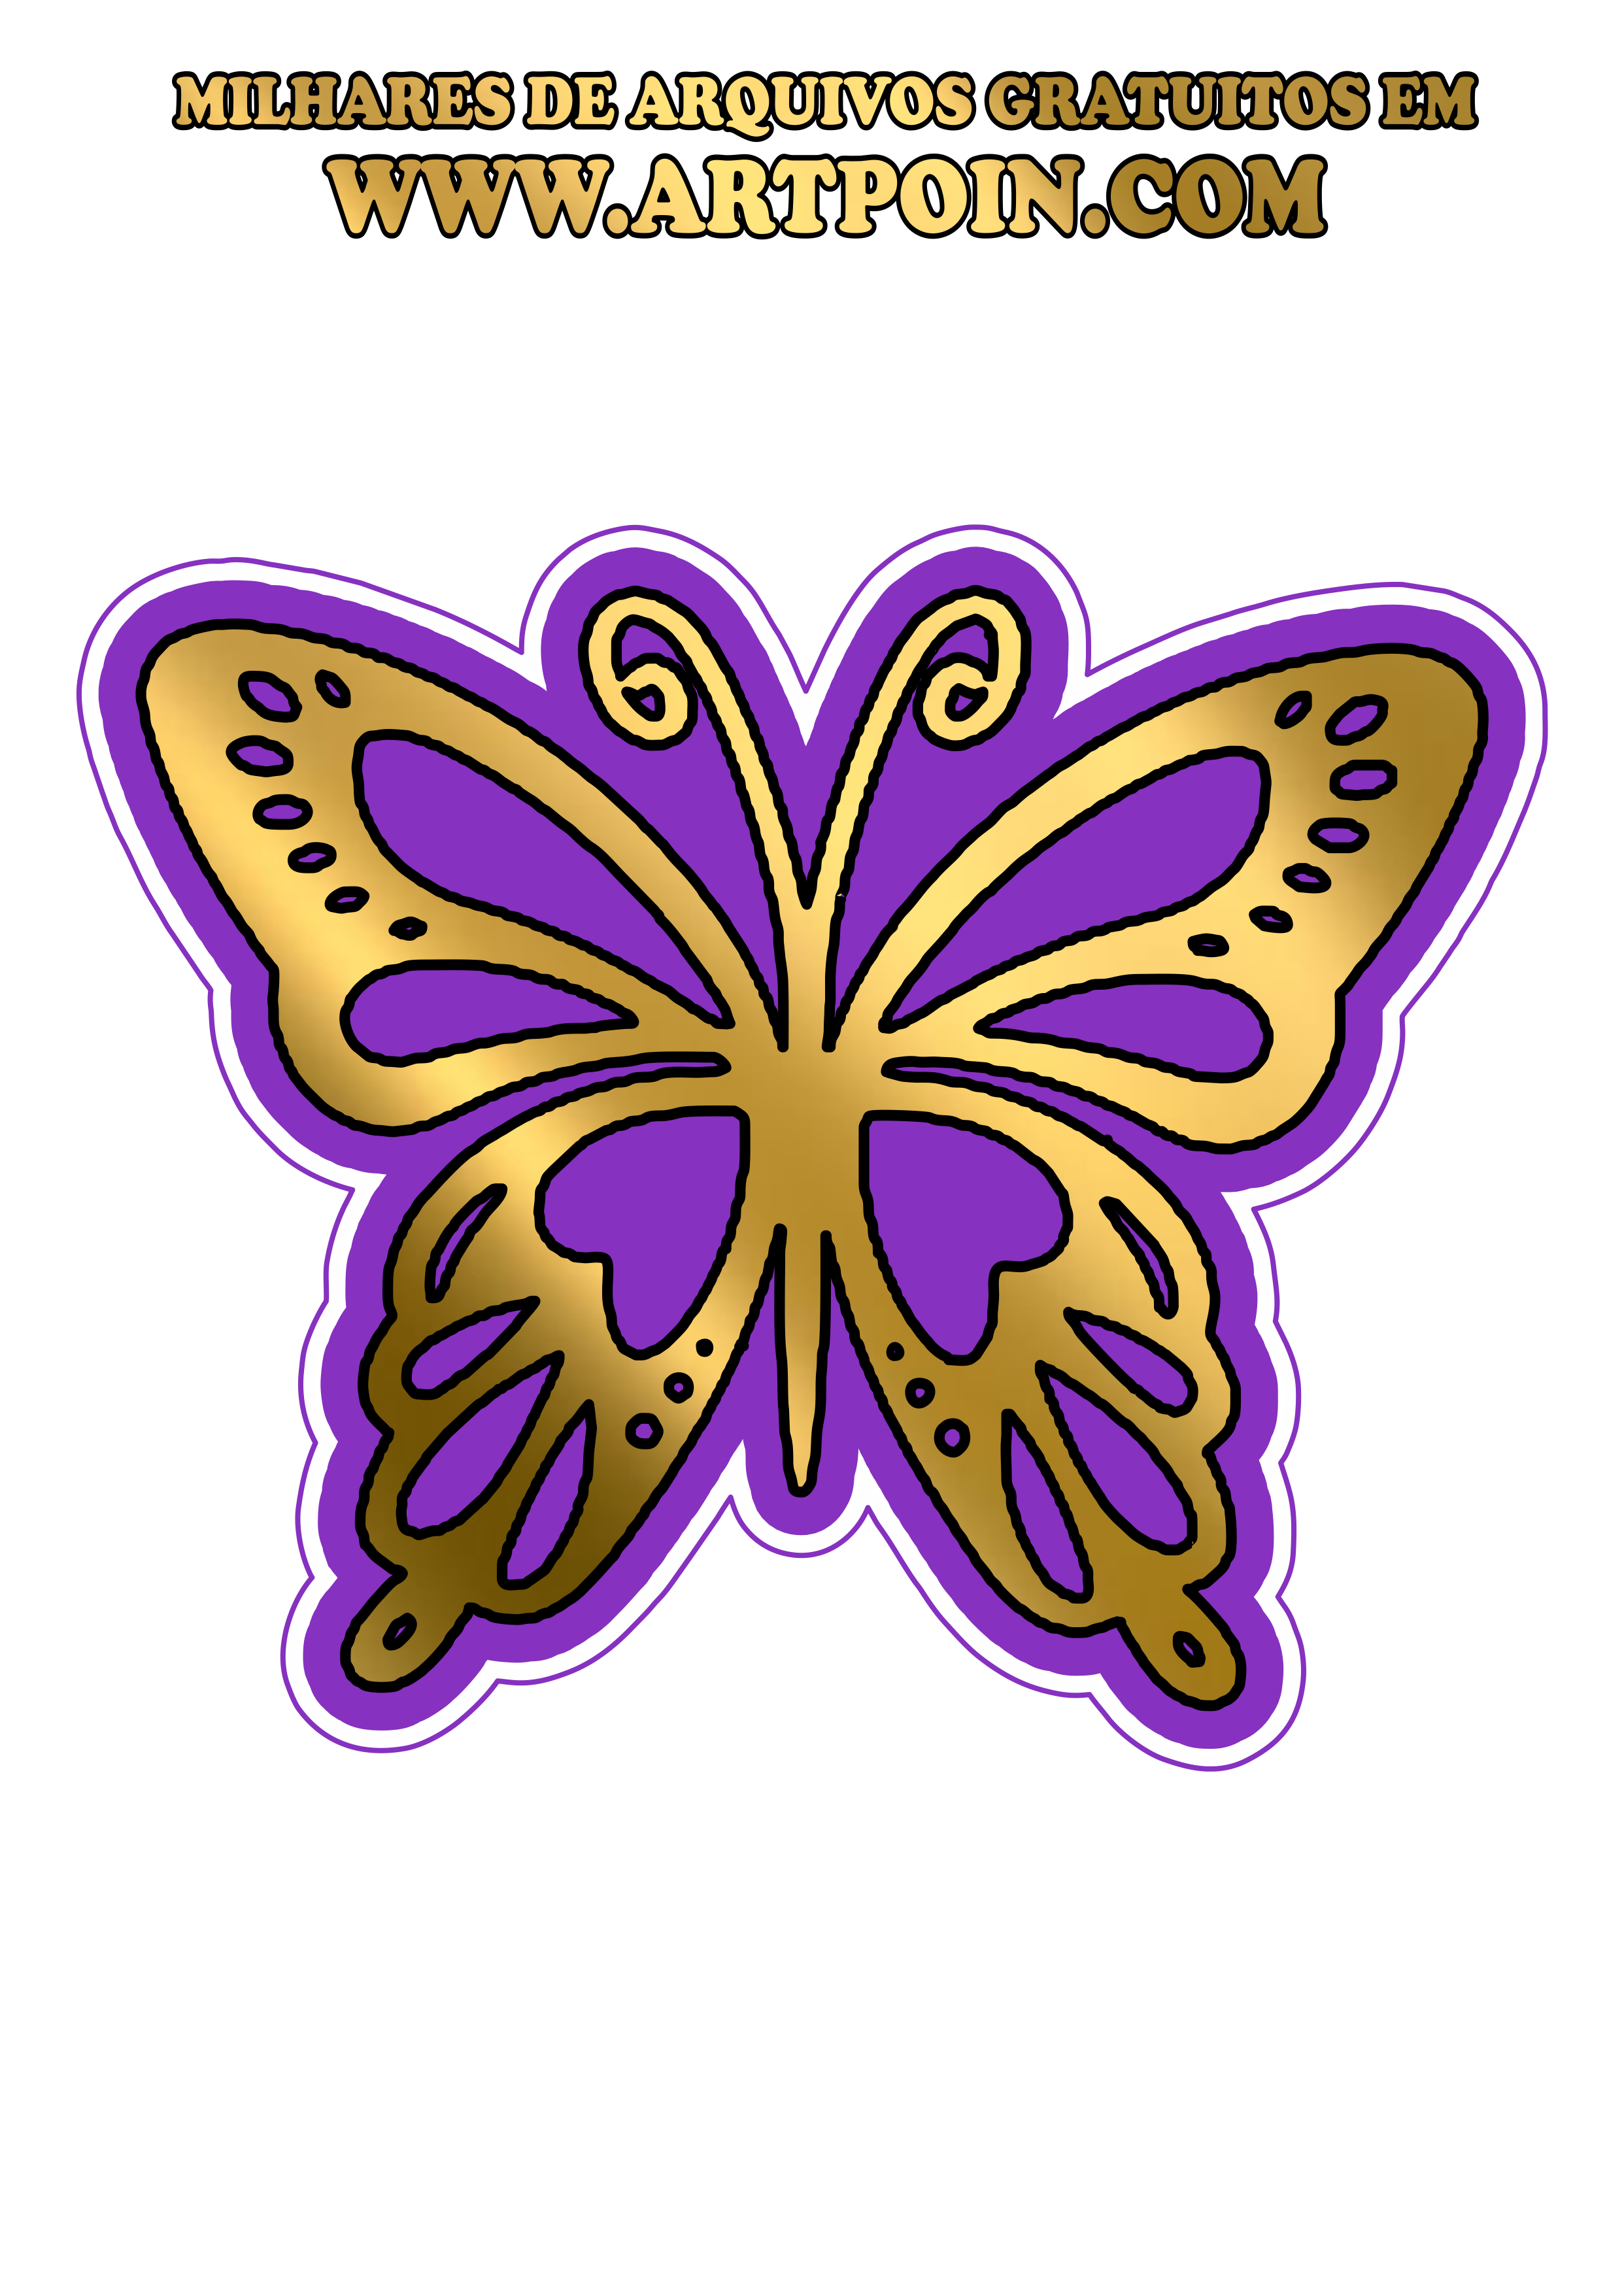 borboleta-dourada-com-lilas11